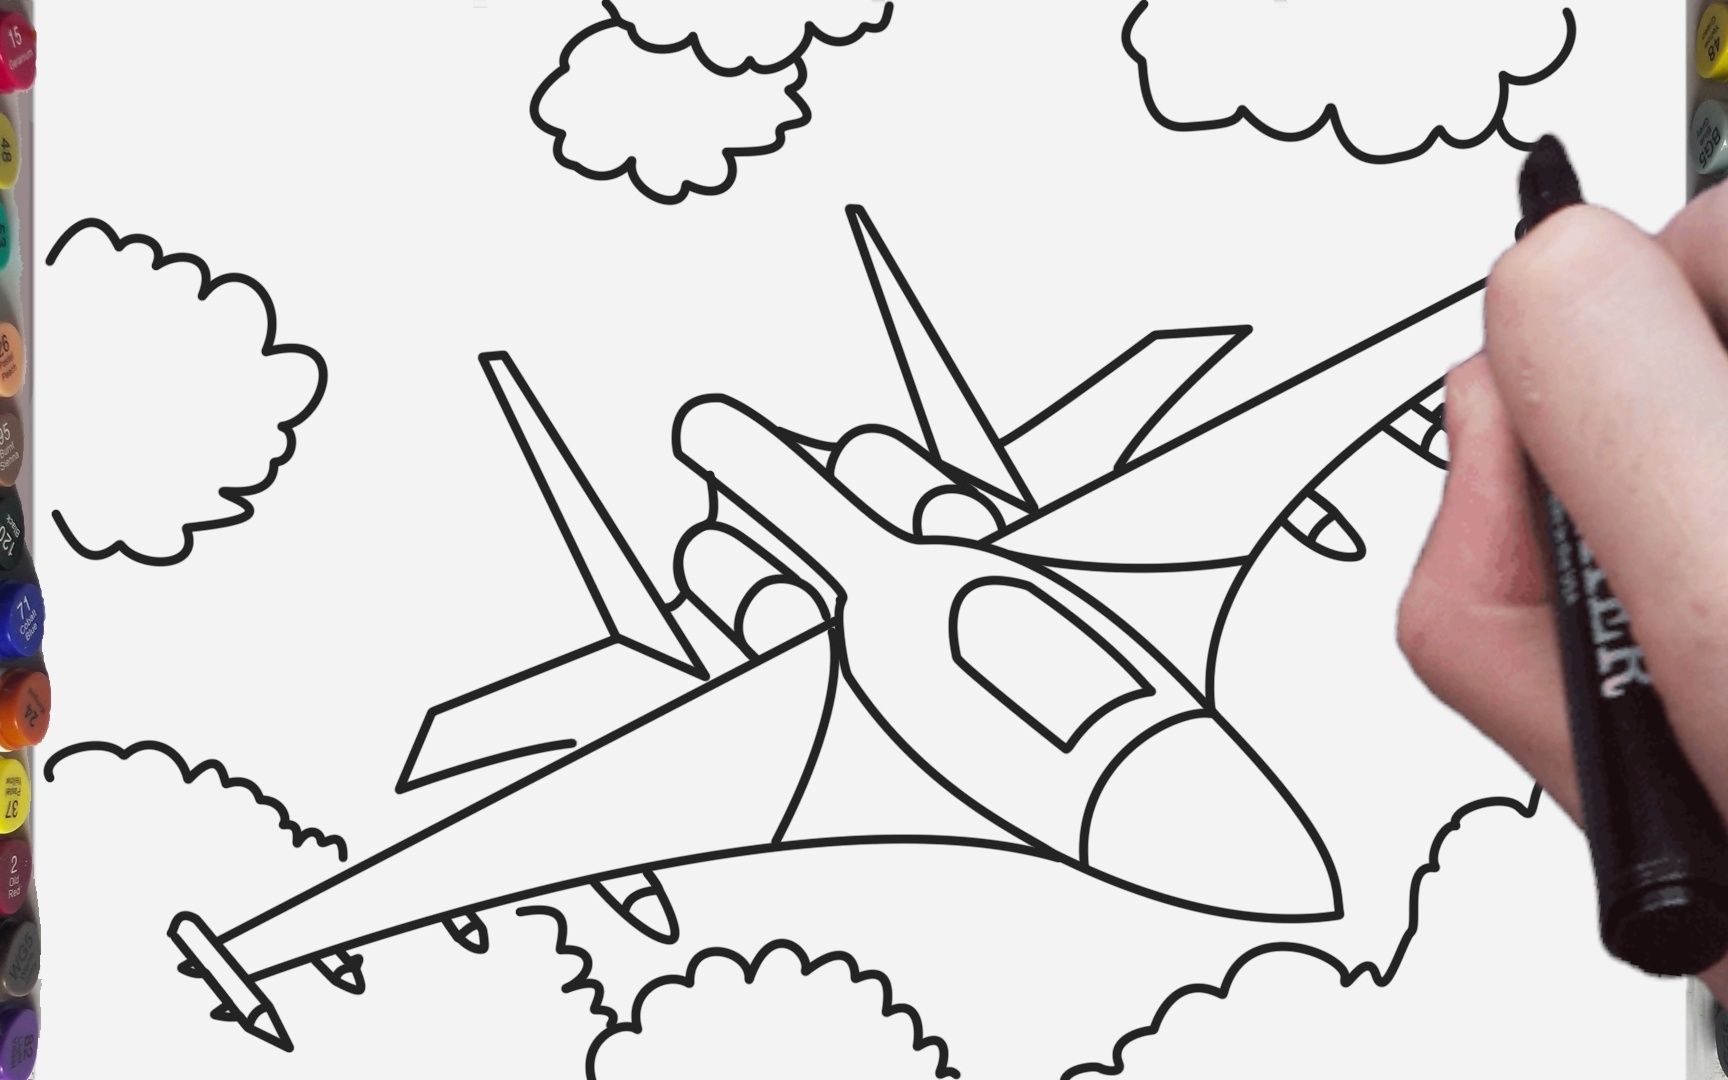 战斗飞机简笔画儿童图片